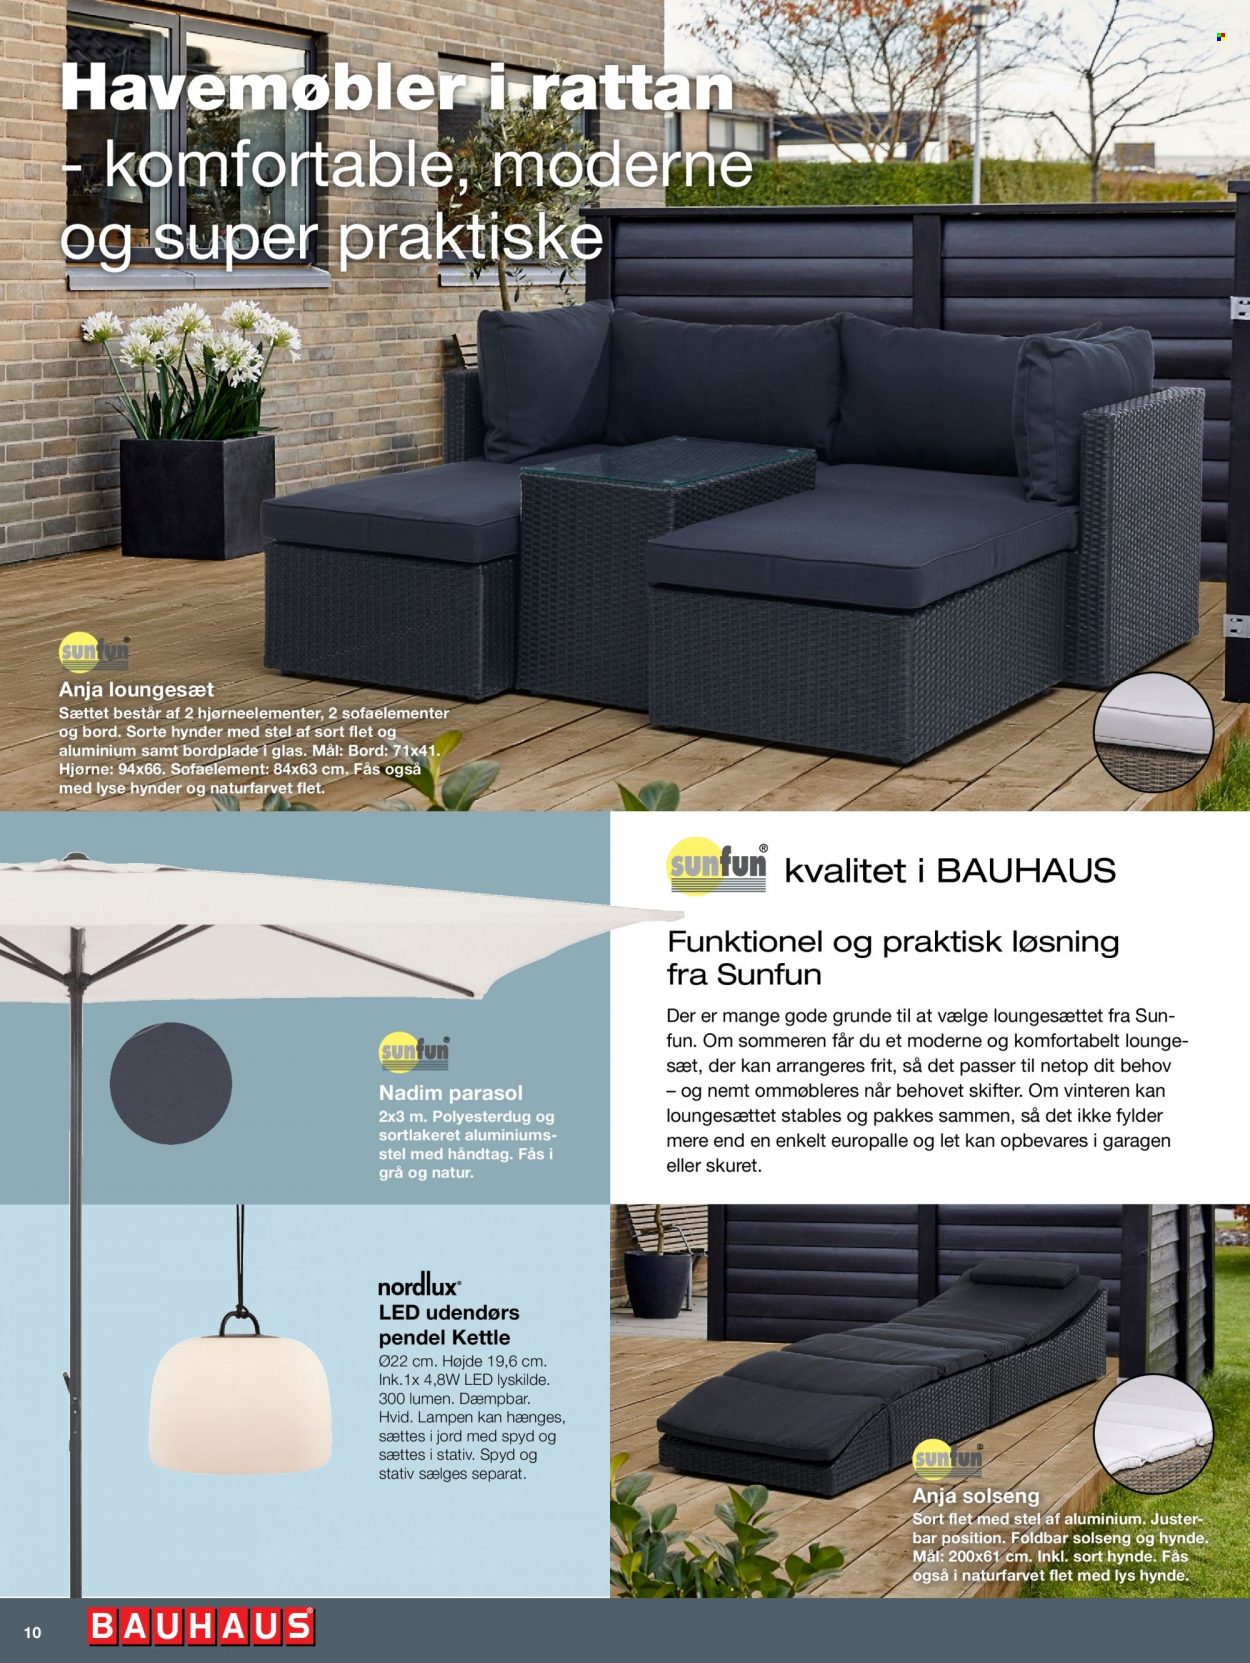 Bauhaus tilbud  - tilbudsprodukter - loungesæt, havemøbler, bordplade, pendel, parasol. Side 10.